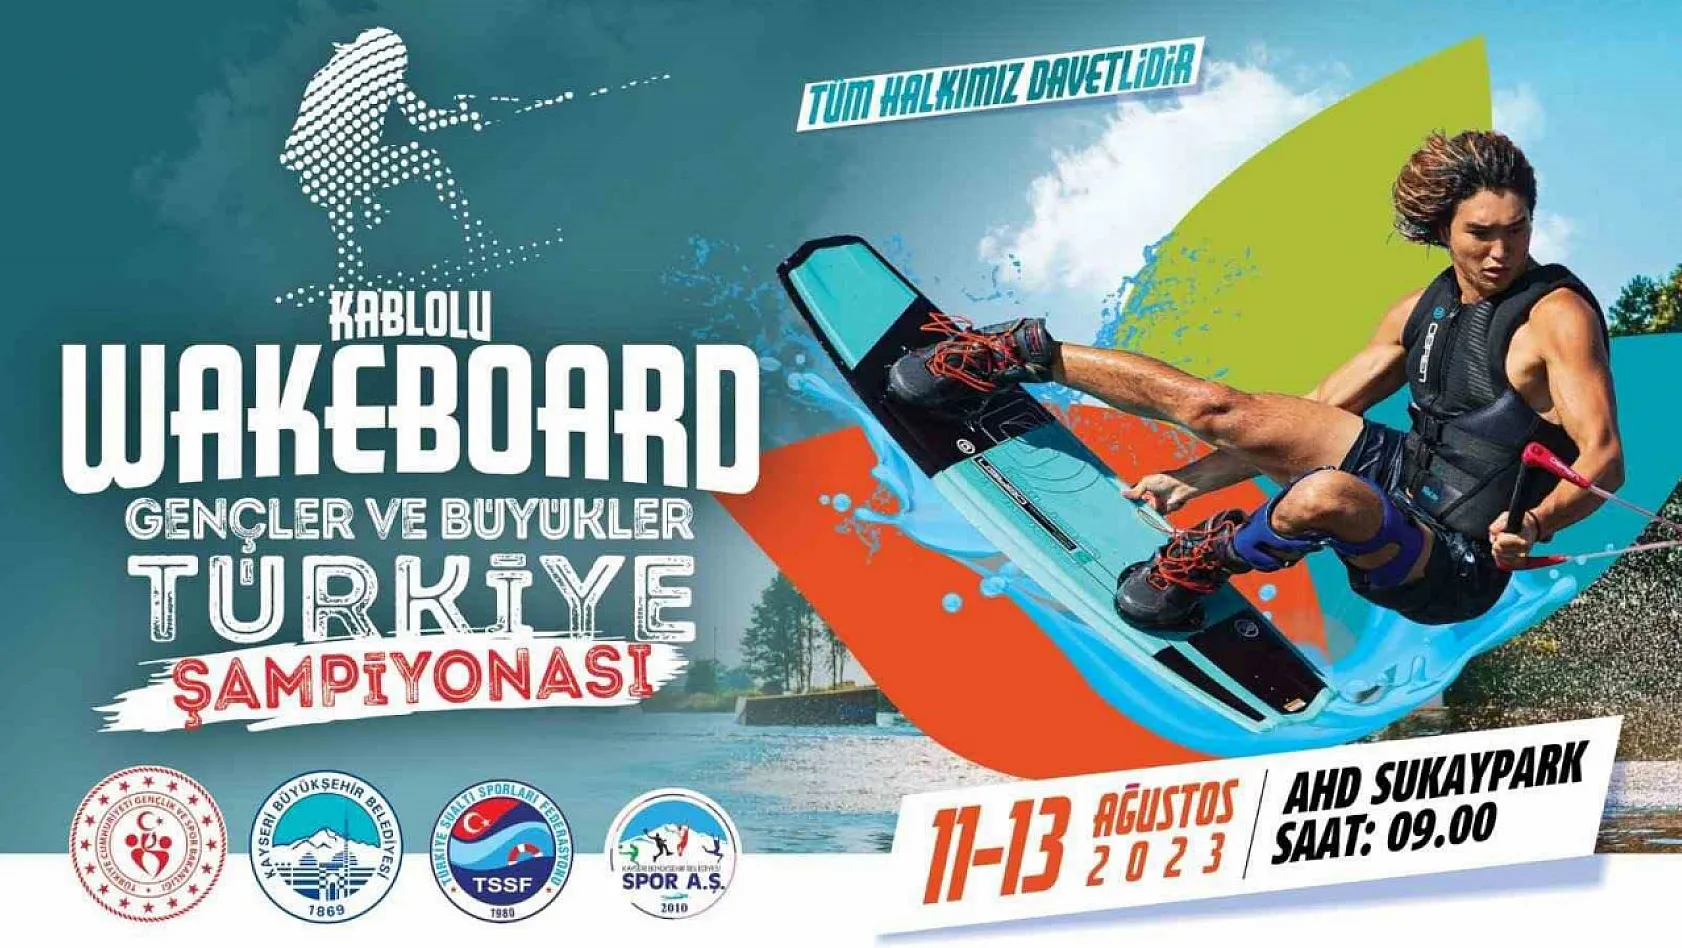 Spor A.Ş. Wakeboard Şampiyonasına Ev Sahipliği Yapıyor!